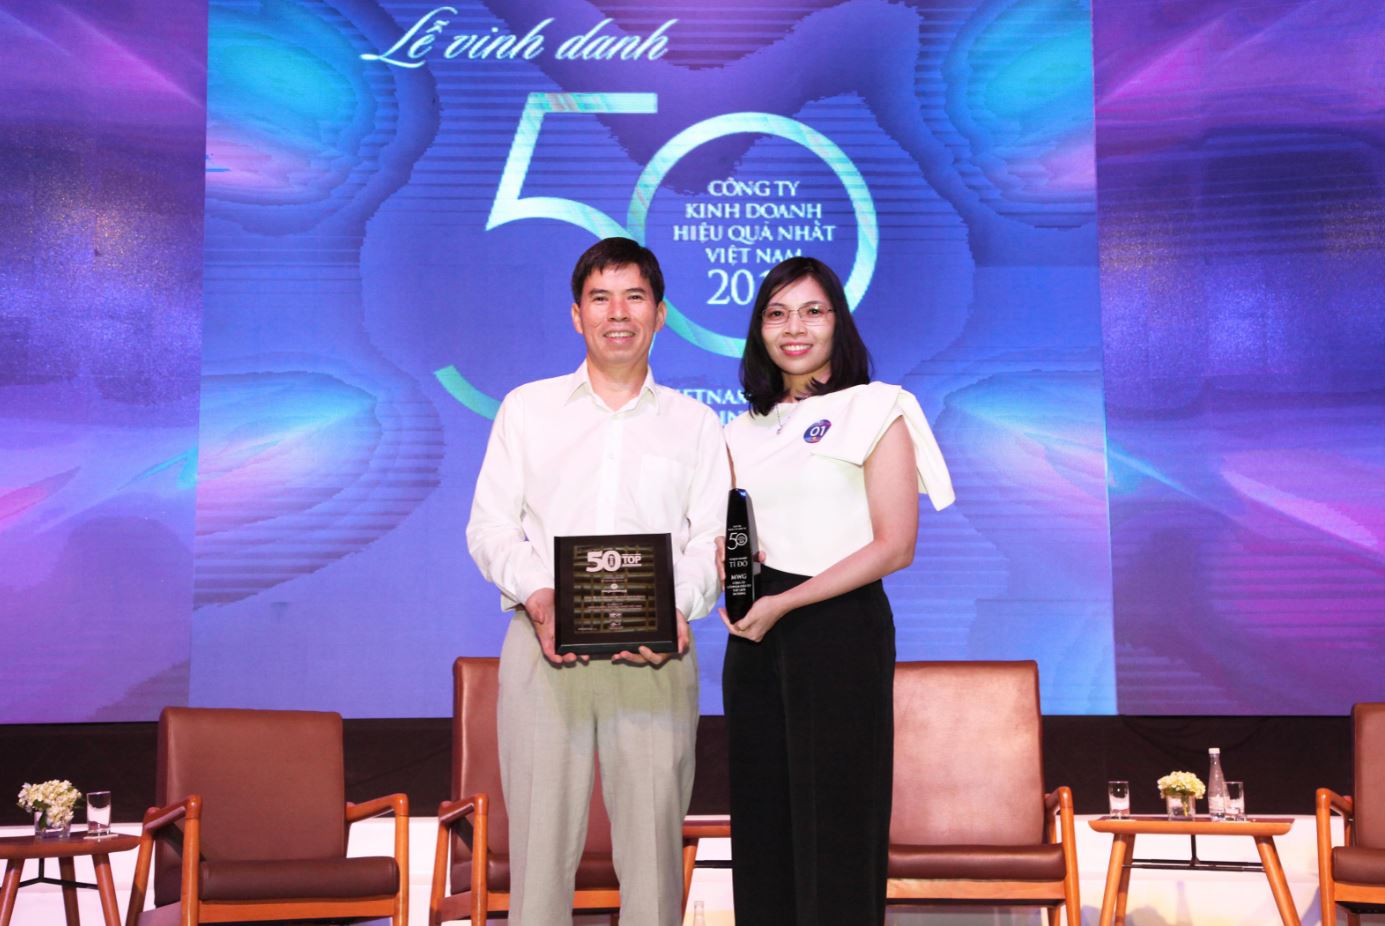 Thế Giới Di Động lần thứ 3 dẫn đầu top “50 Công ty kinh doanh hiệu quả nhất Việt Nam” chỉ trong vòng 5 năm